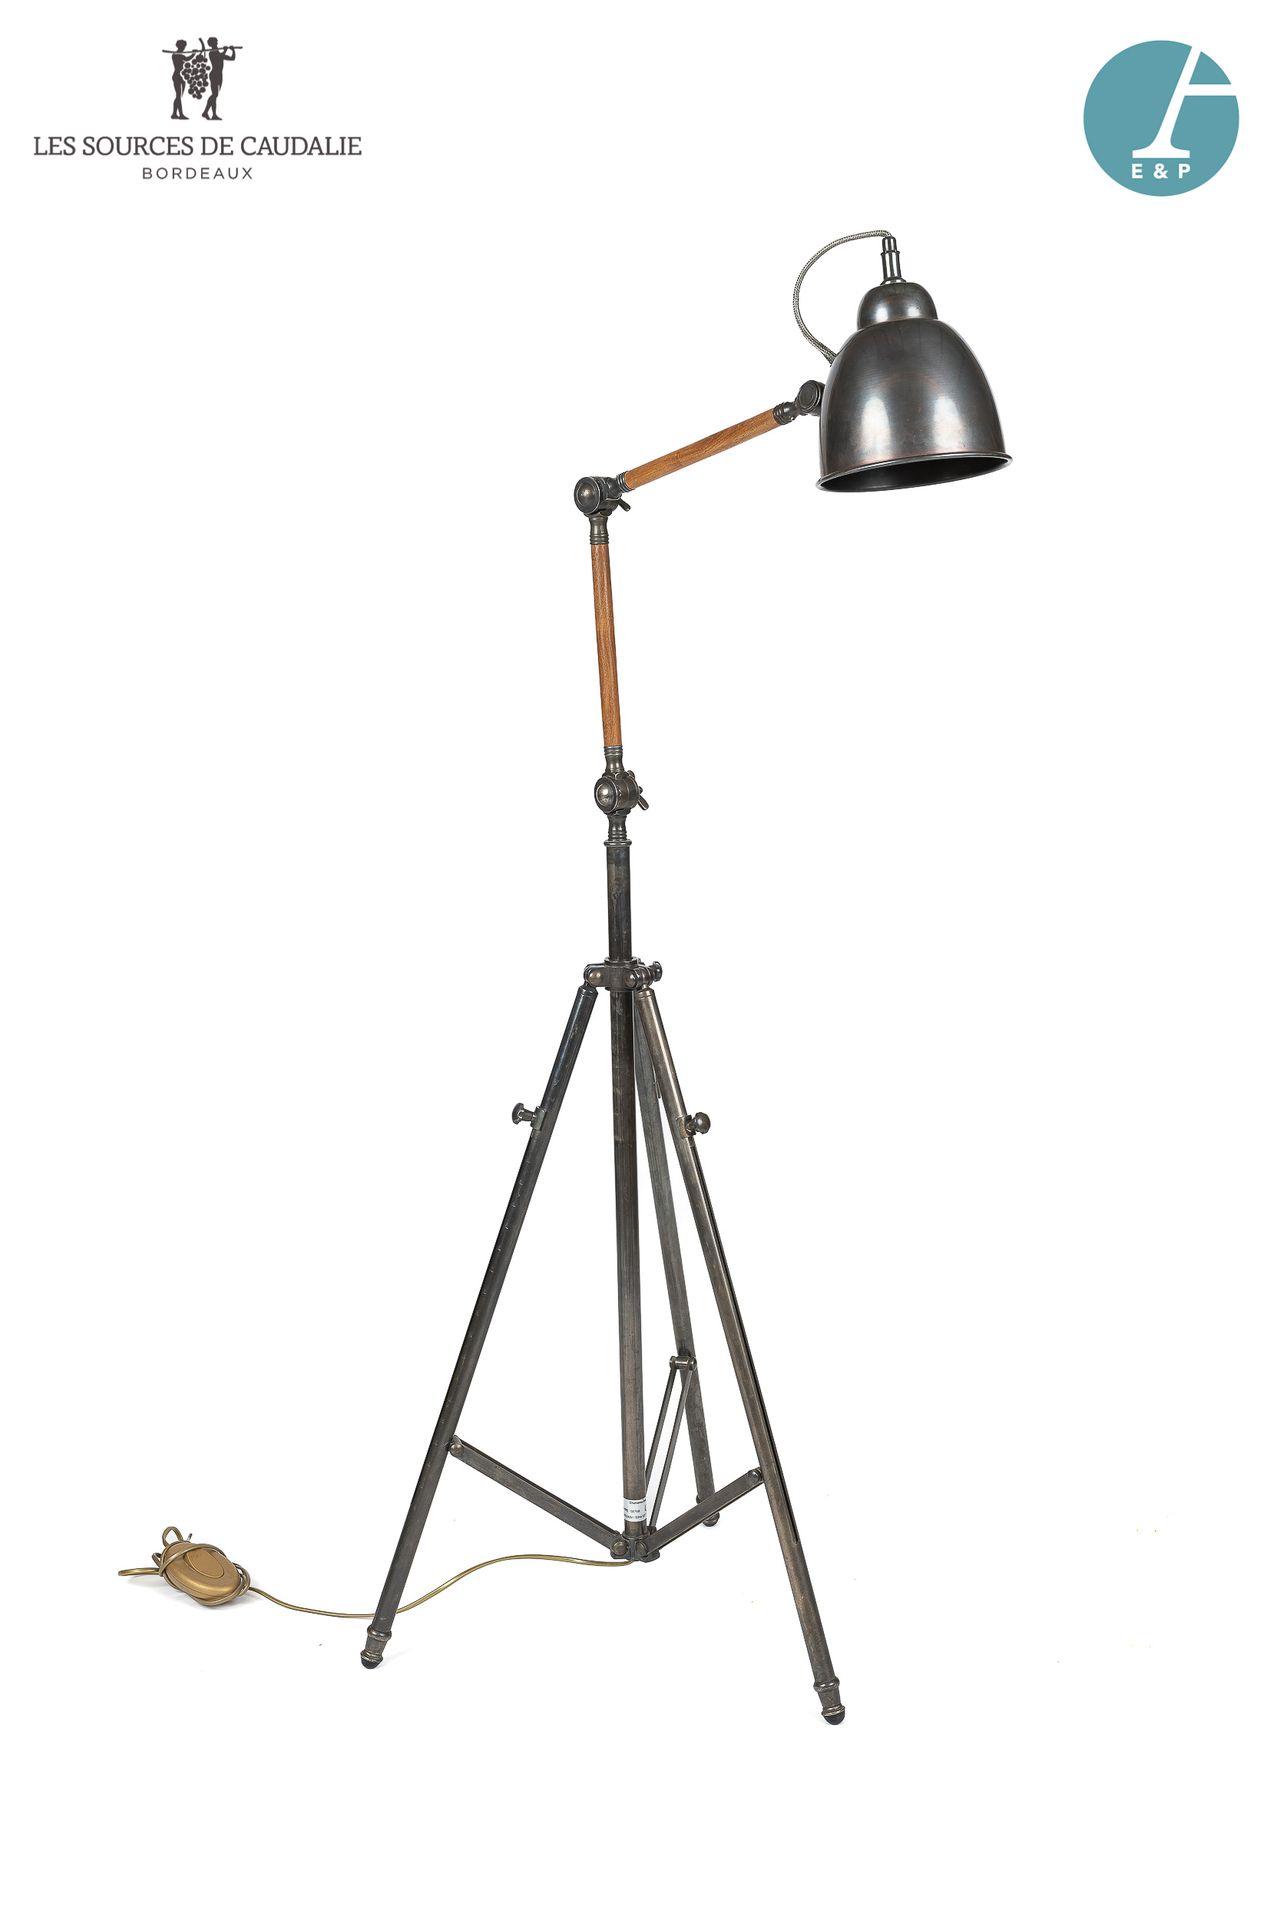 Null Lámpara de pie articulada de metal y madera, estilo industrial.

H: 177,5cm